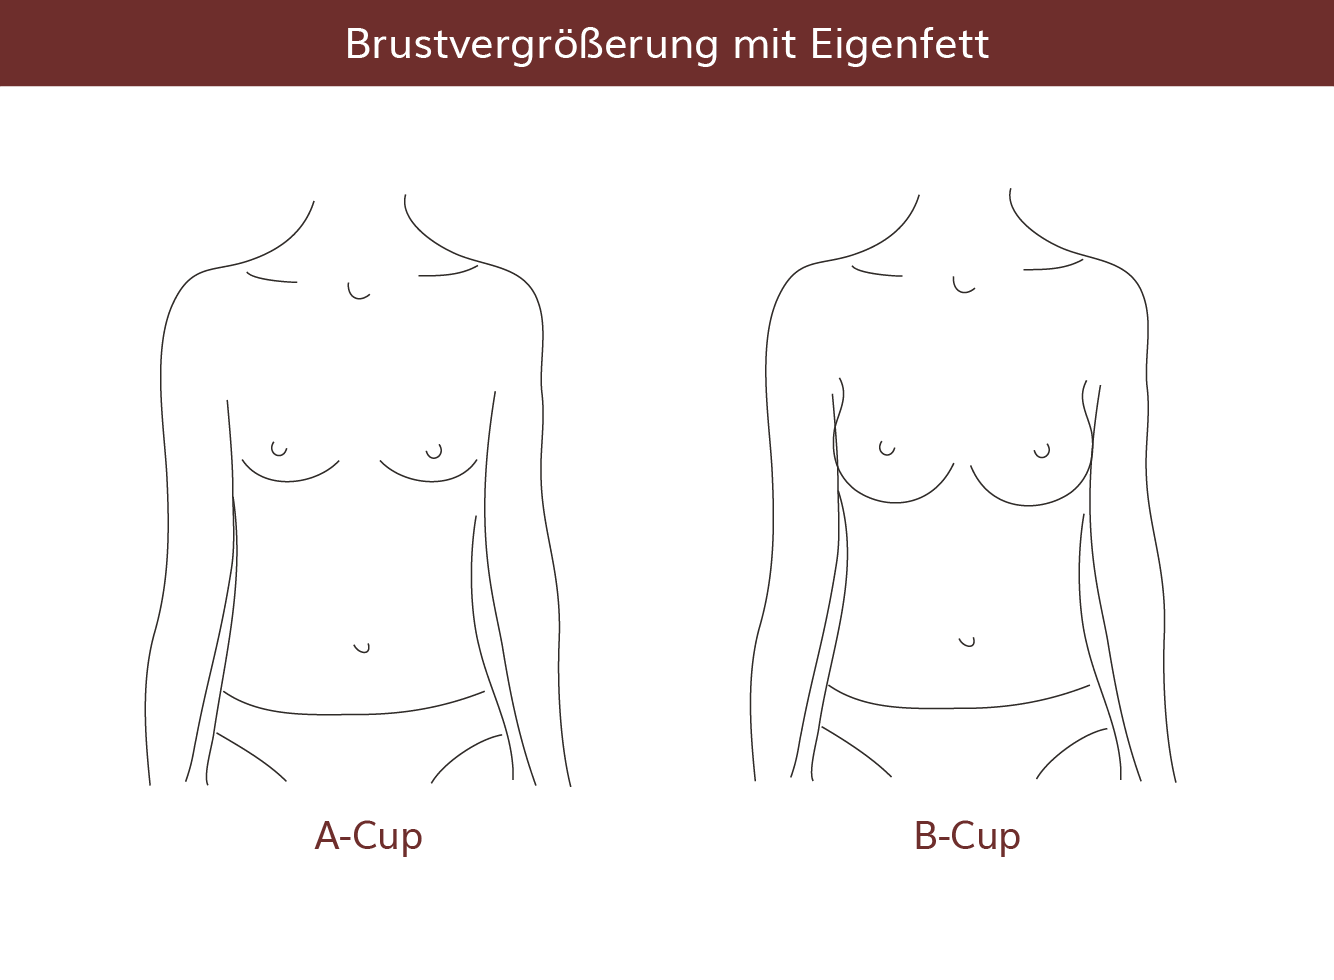 pro Brust Heidelberg Brustvergrößerung mit Eigenfett 